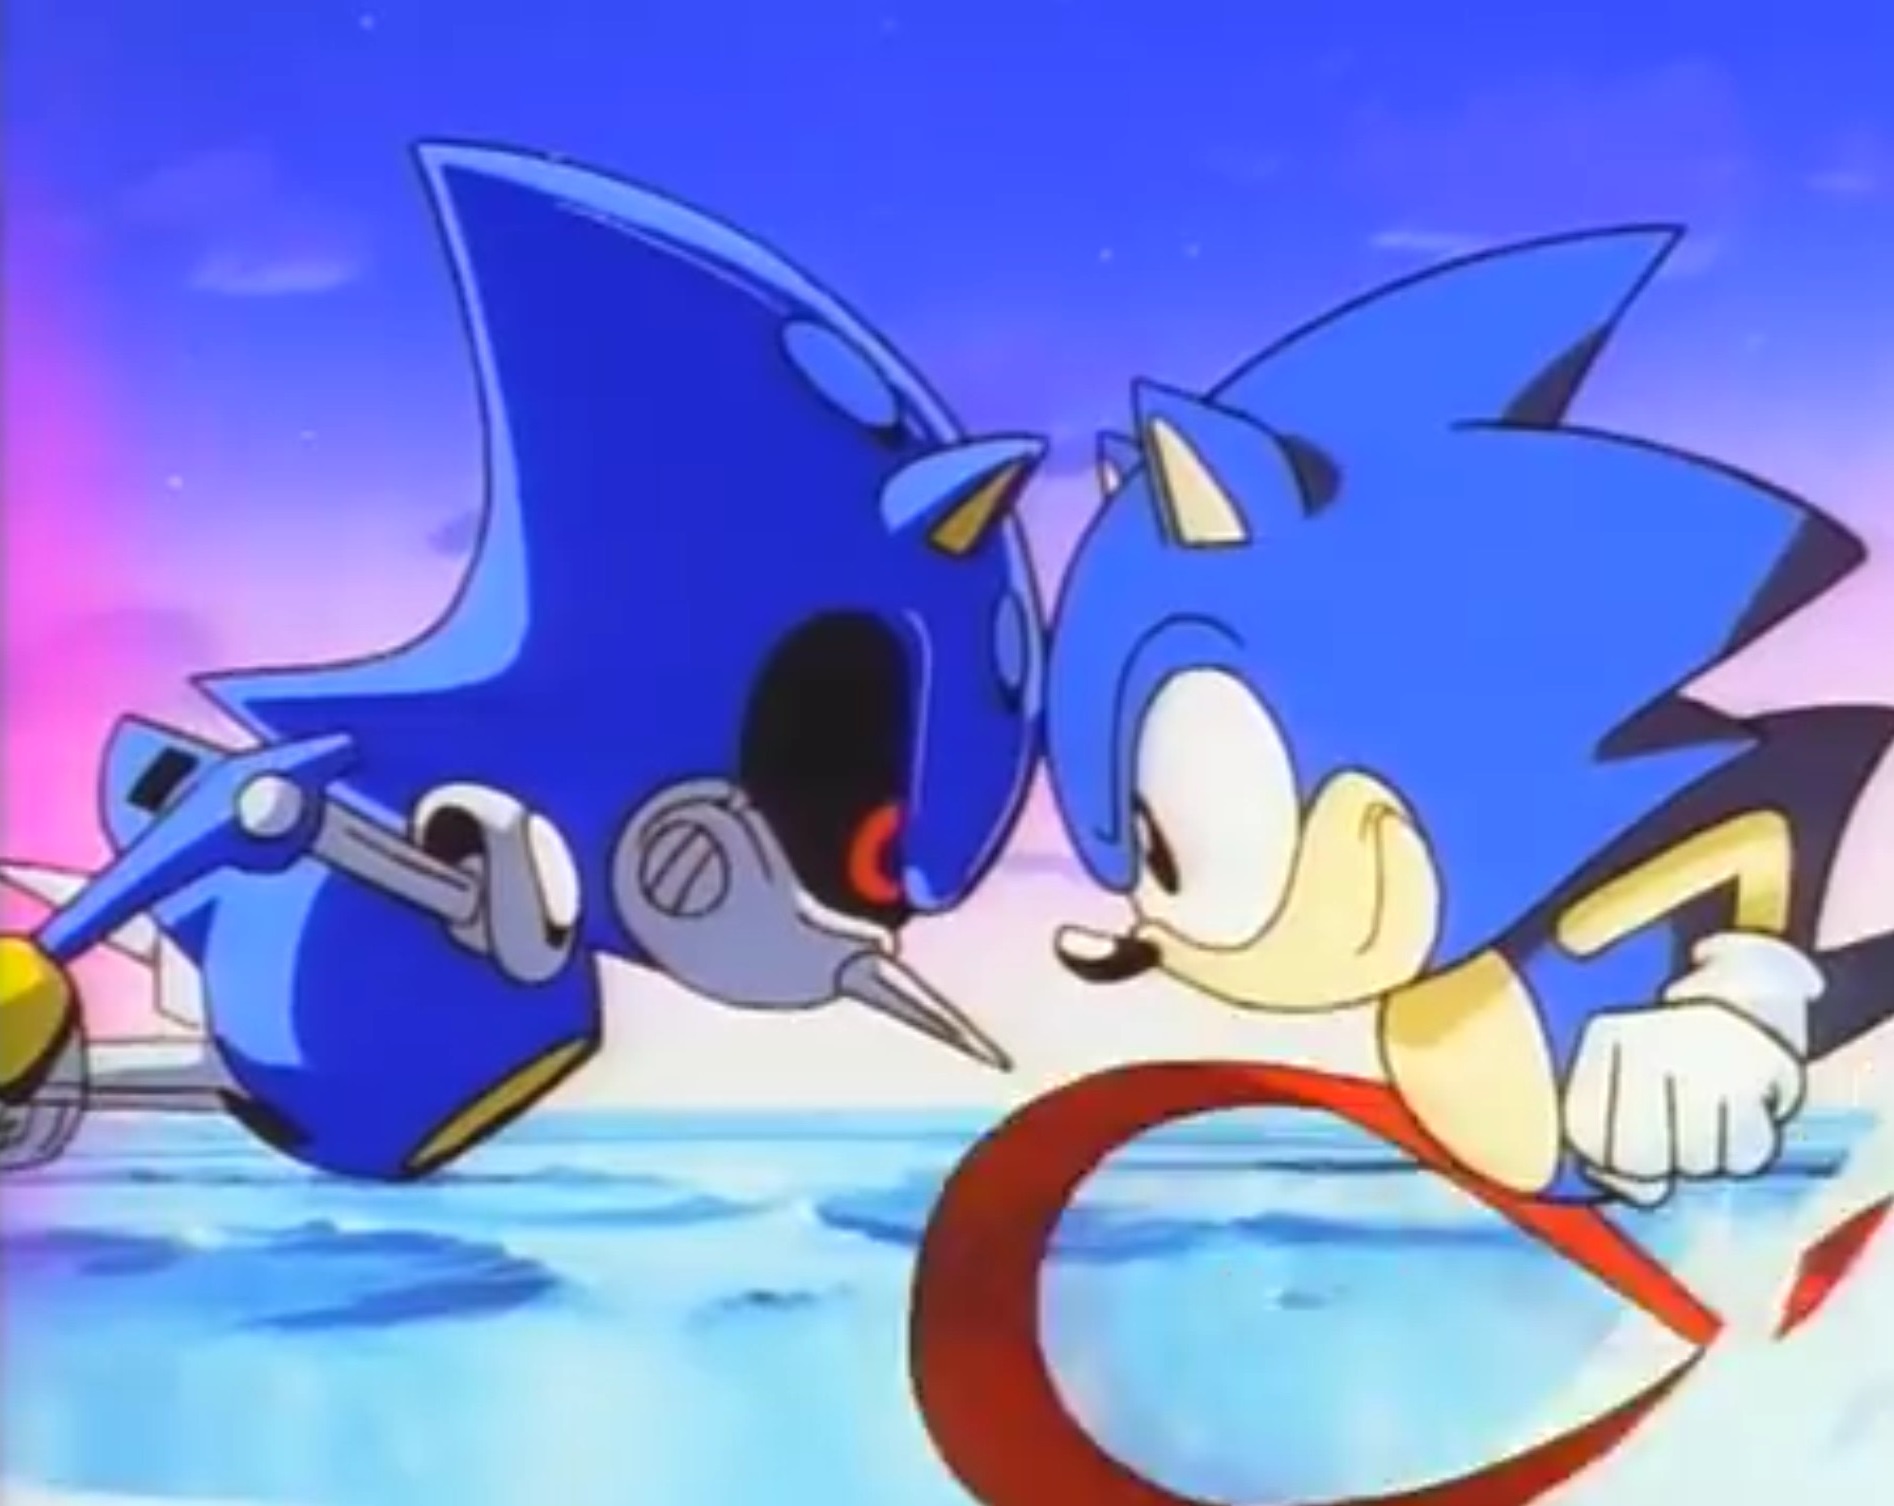 Sonic: O Filme - Relembre a animação de 1996 - Blog TecToy